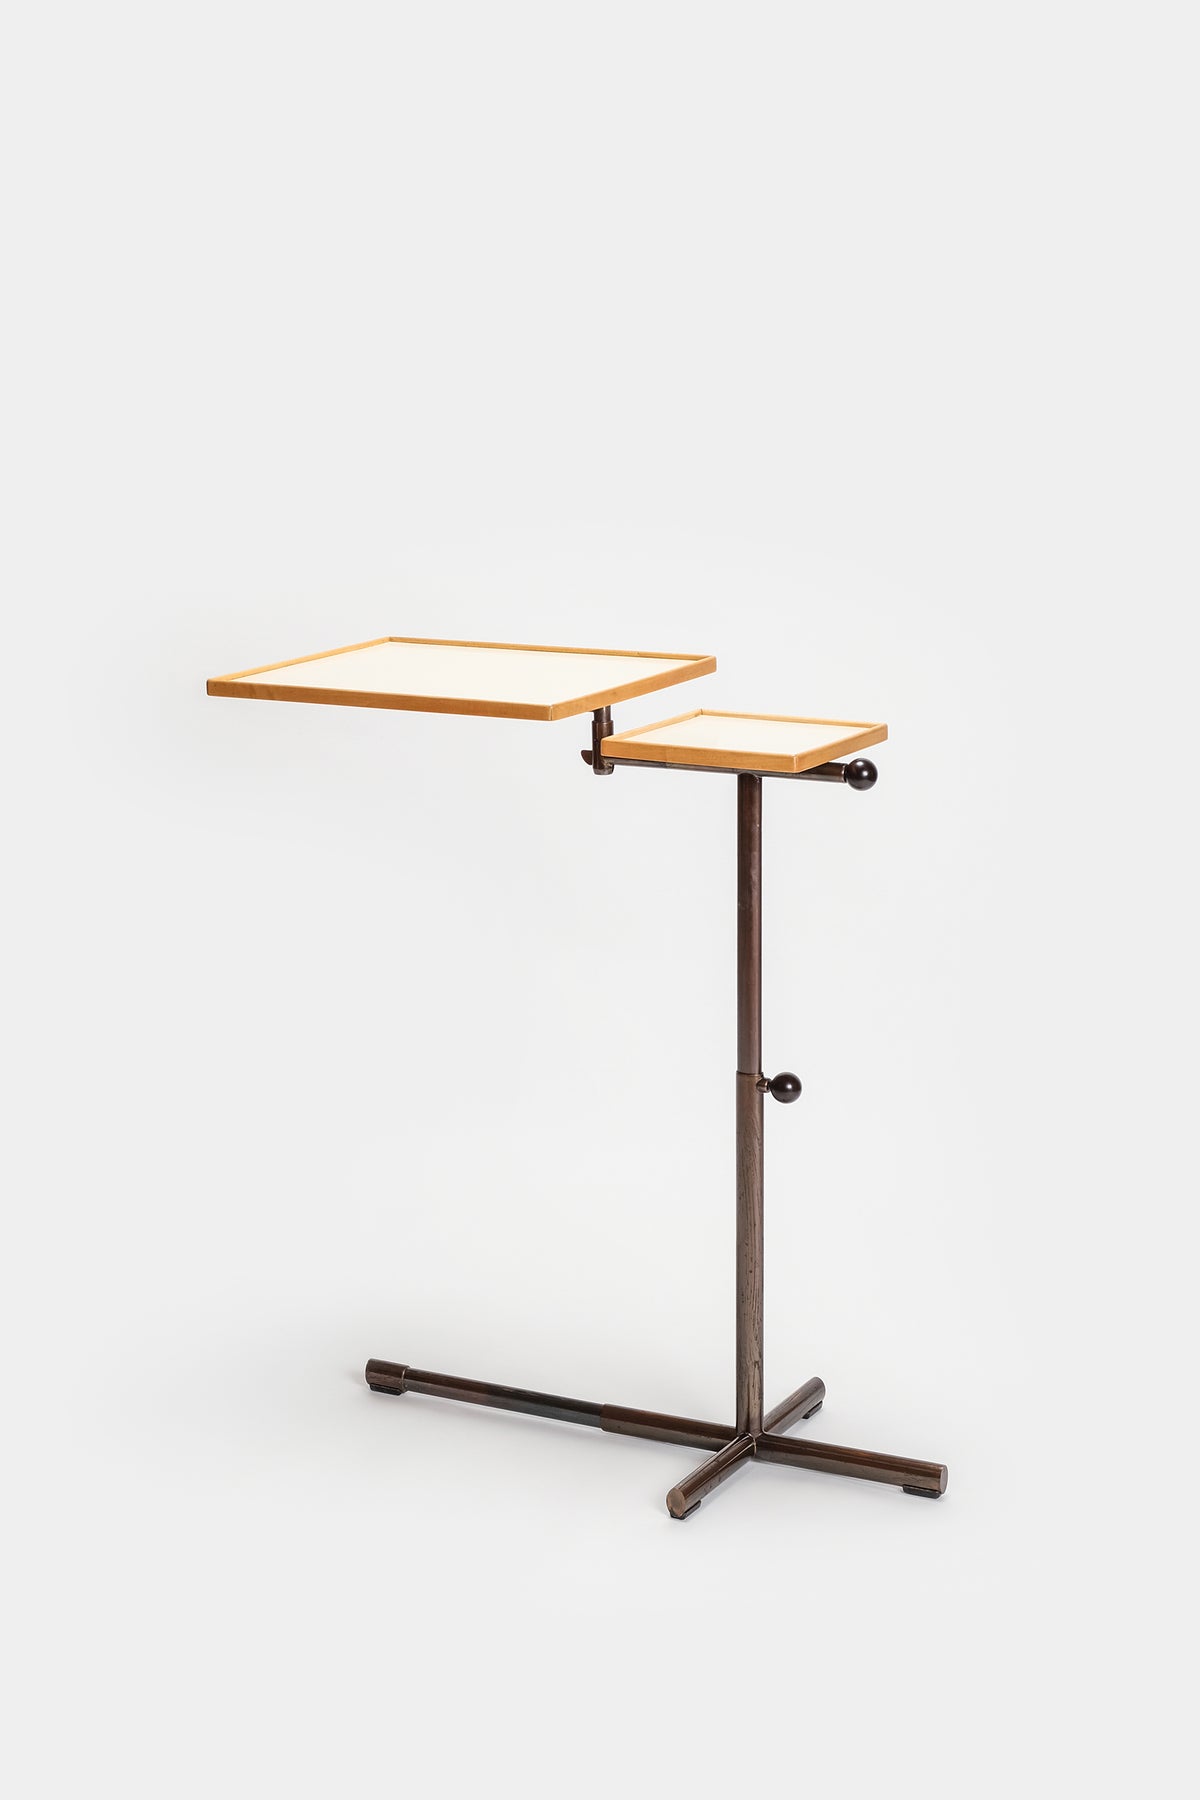 Embru Caruelle Table, Model 2497